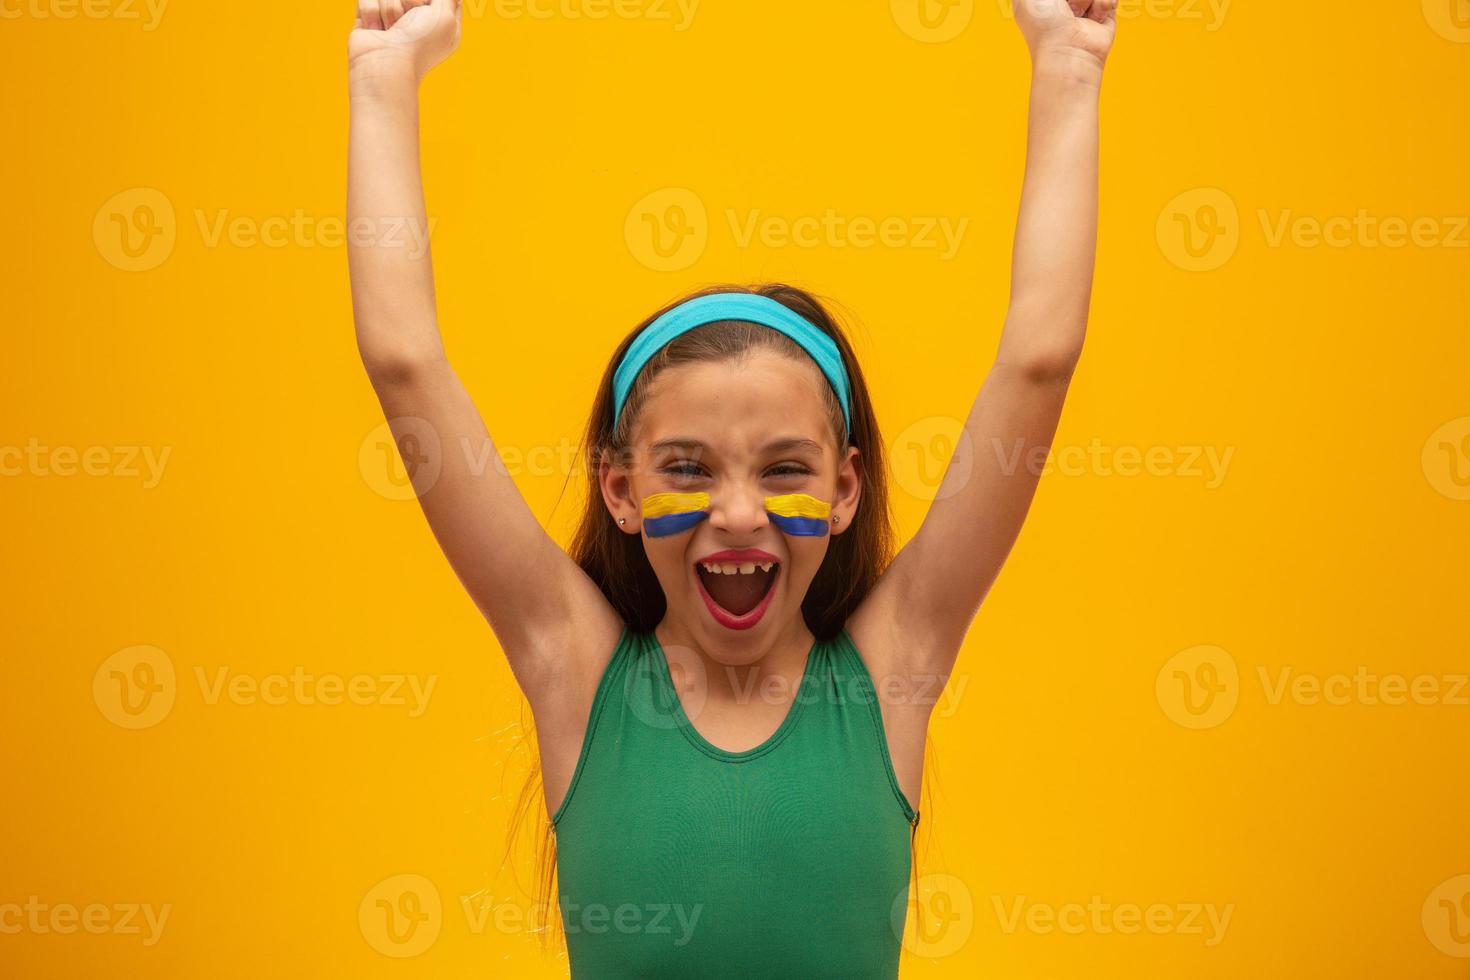 voetbalsupporter, braziliaans team. wereldbeker. mooi klein meisje juichen voor haar team op gele achtergrond foto